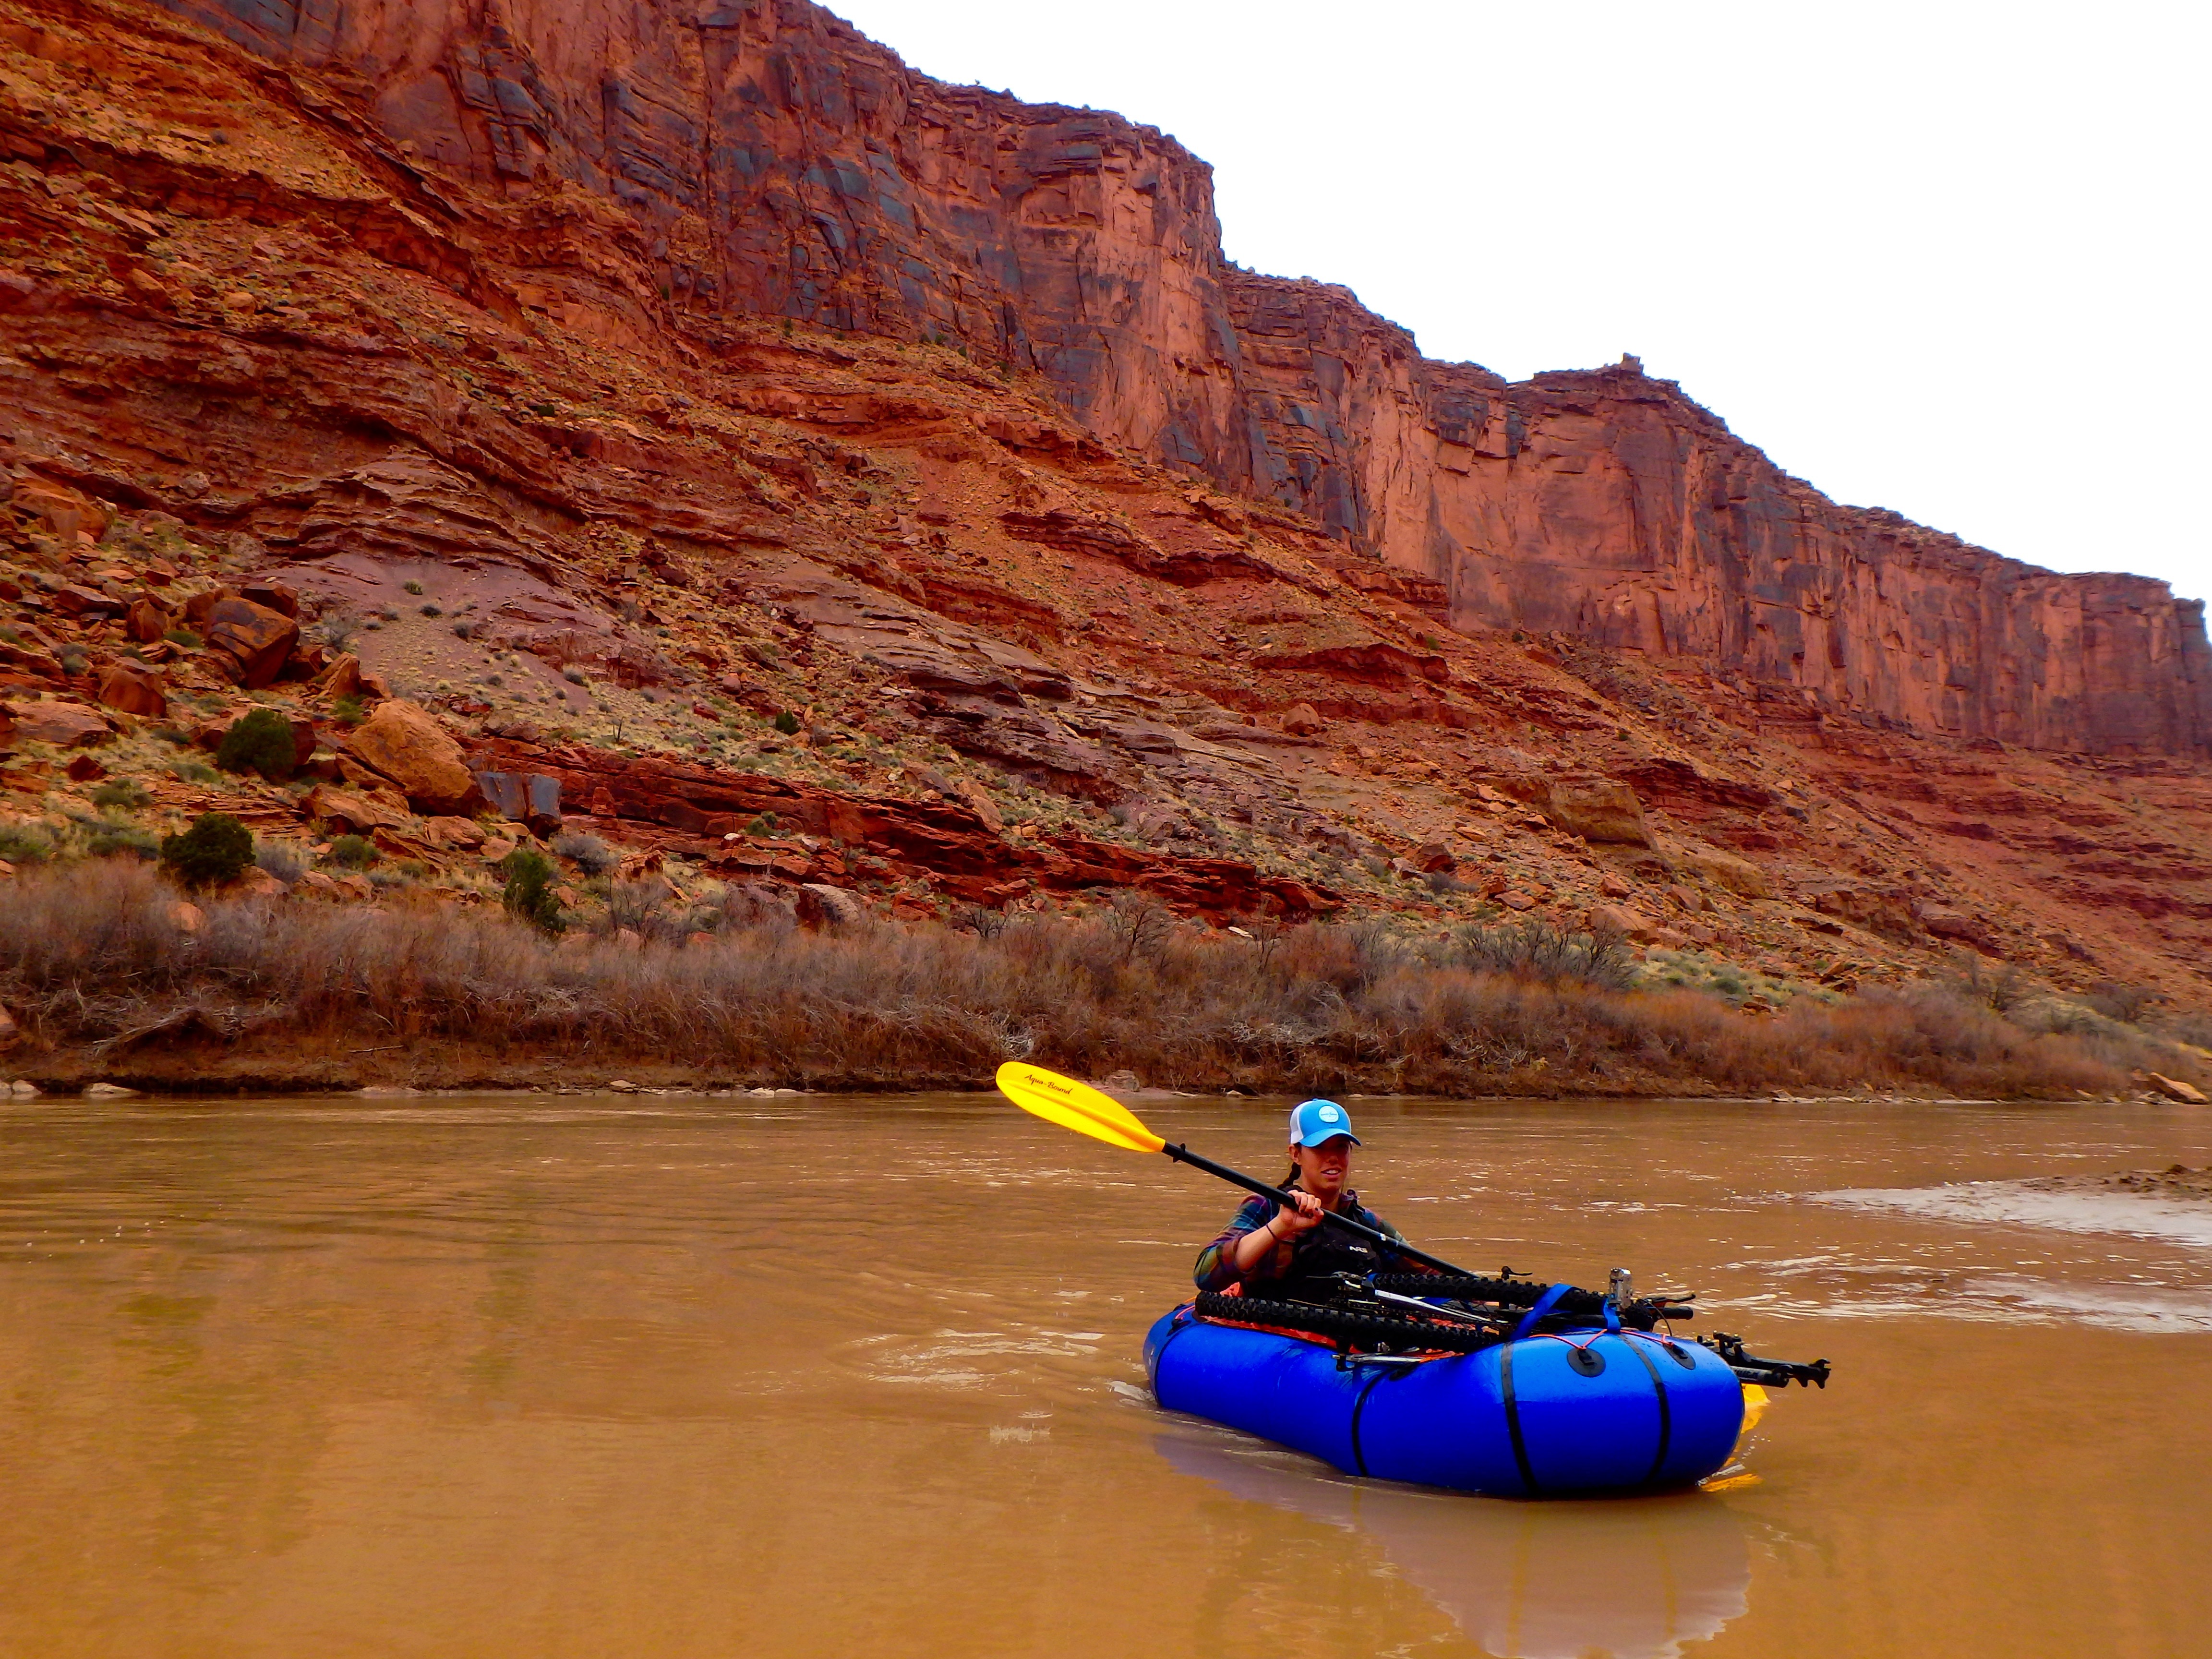 Walker pack pack rafting the Colorado River in Moab, Utah.